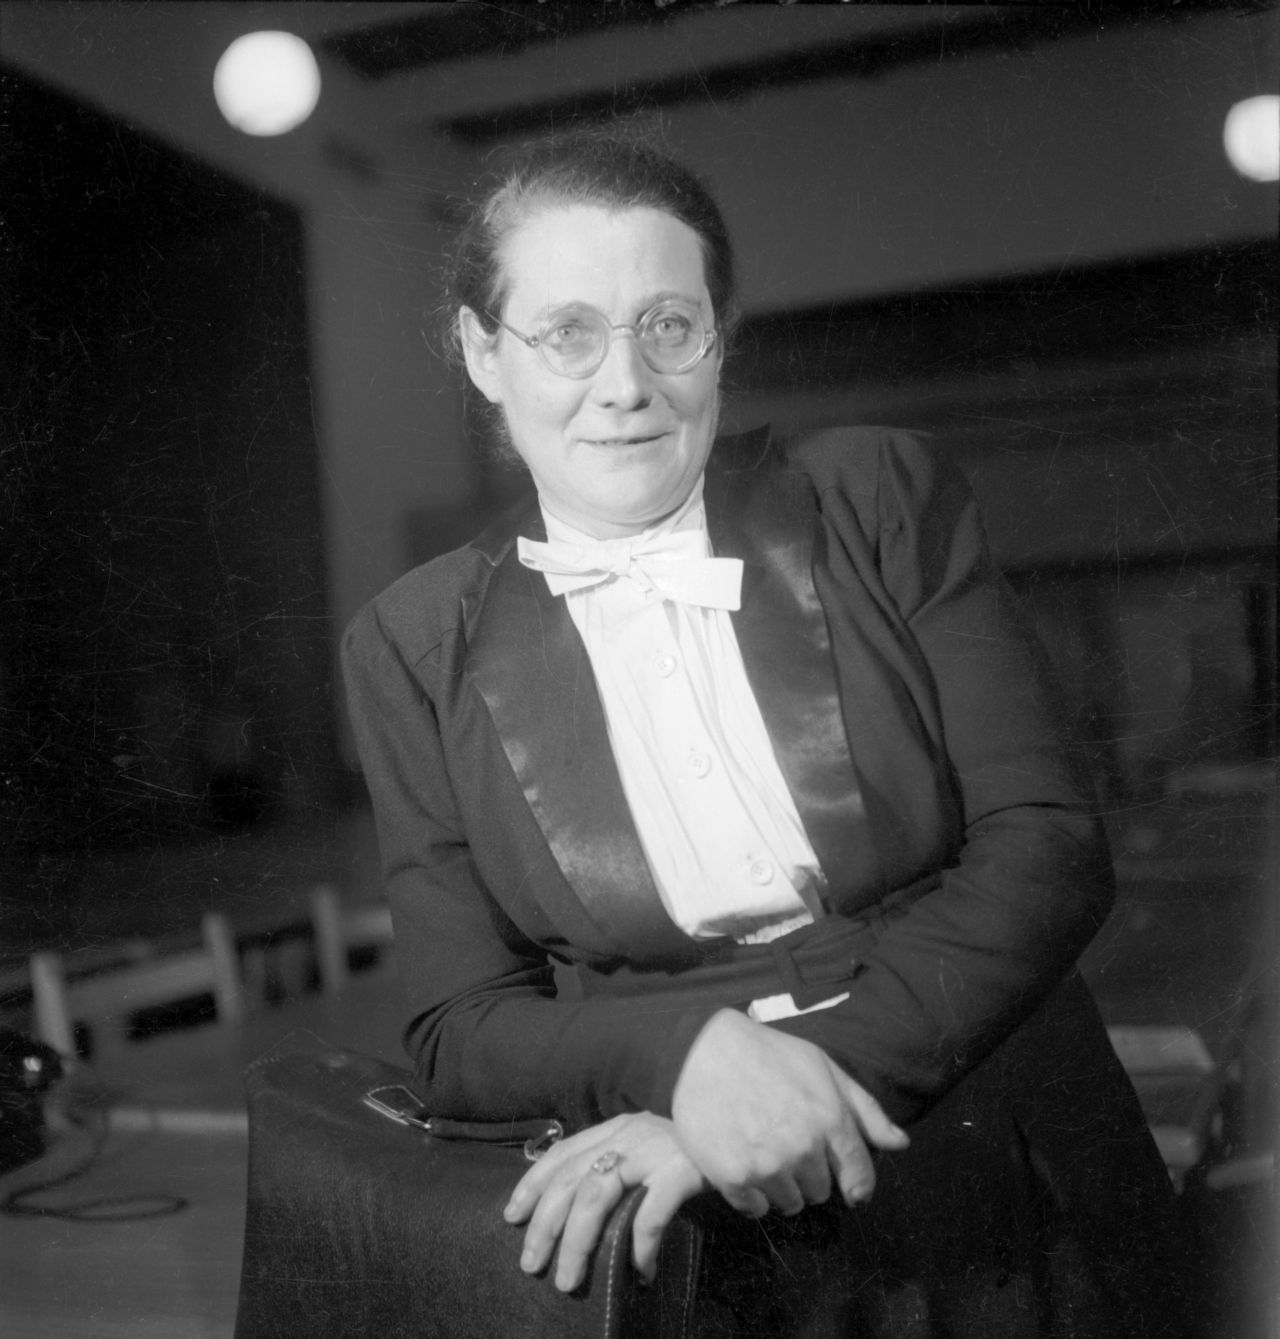 Porträtfotografie von Helene Wessel, Mitglied der Zentrumspartei und des Parlamentarischen Rats, 1948-49